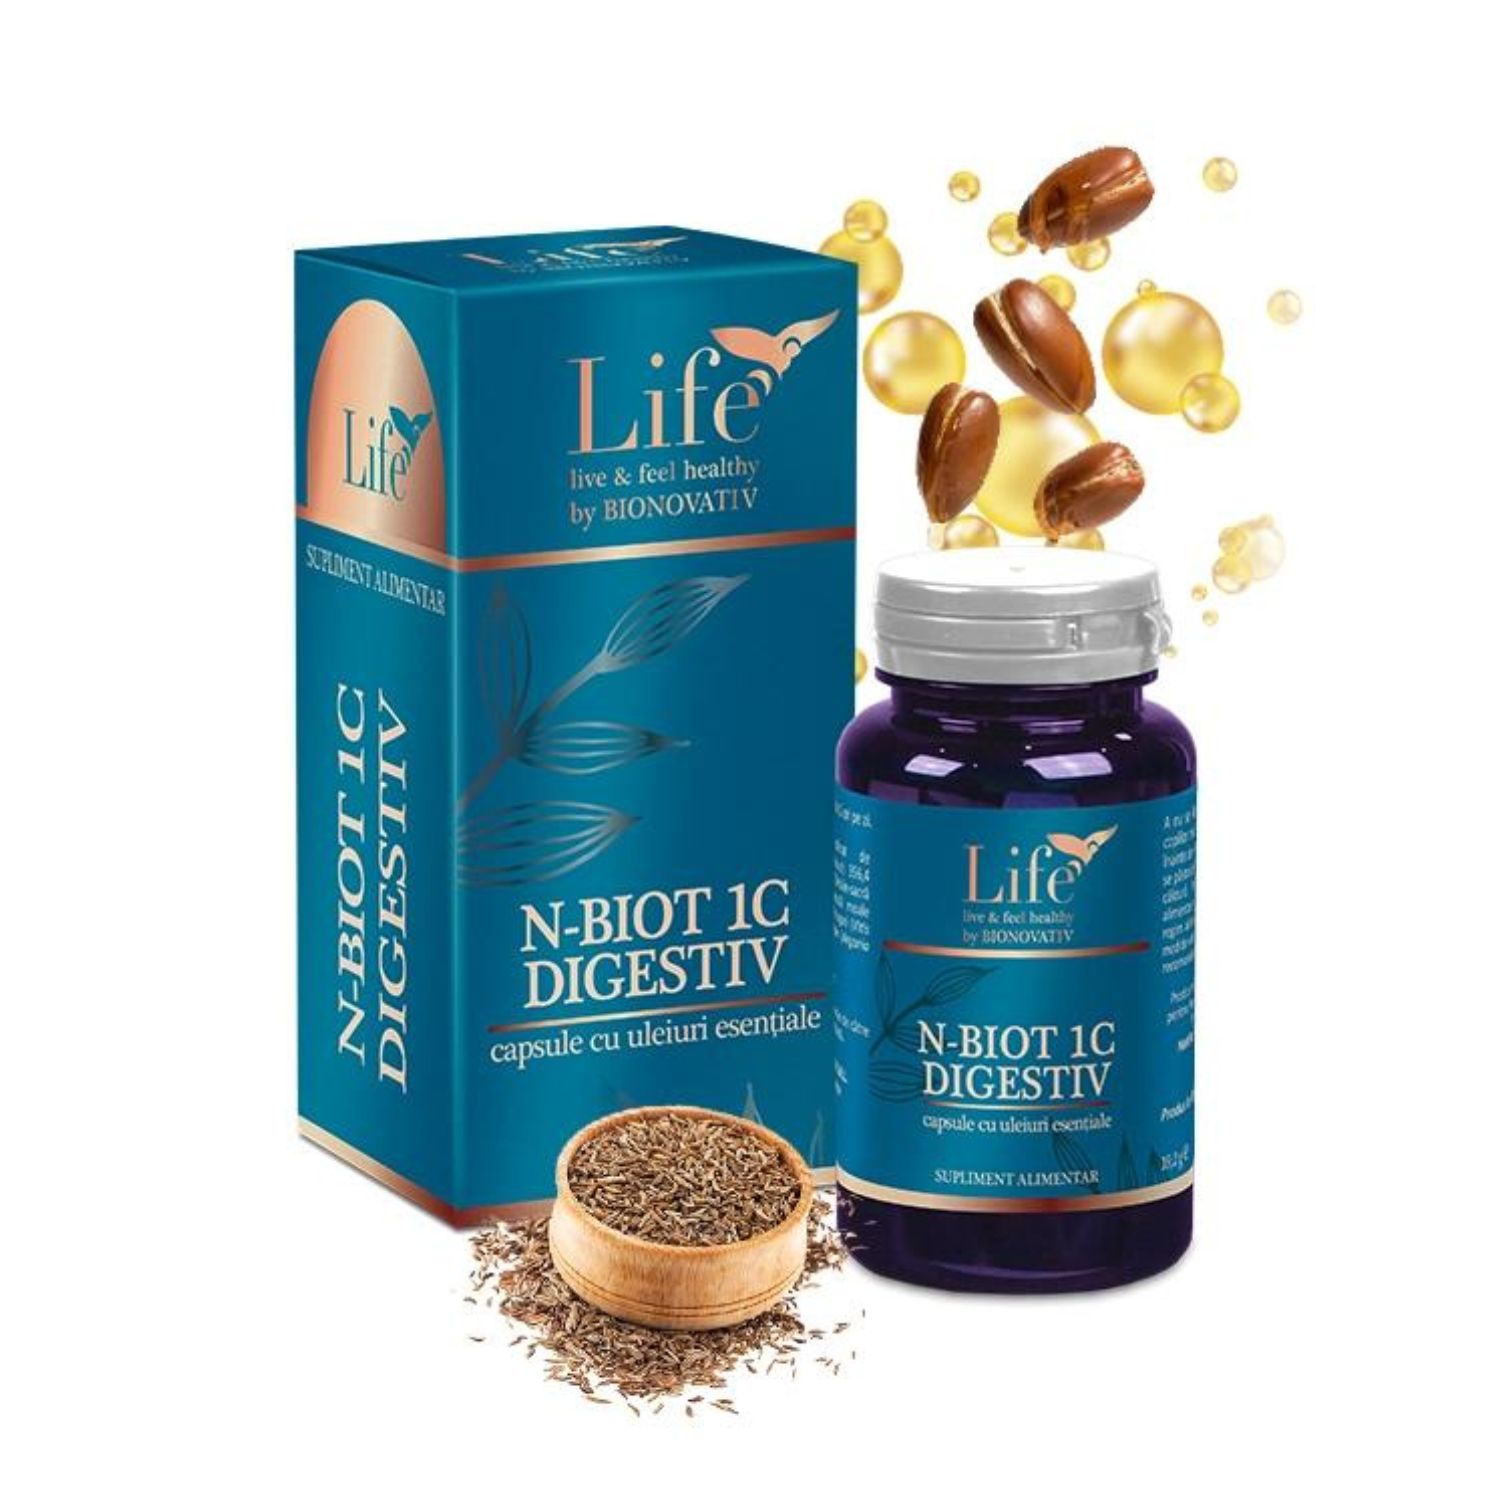 Capsule N - Biot Digestiv cu uleiuri esentiale, 30 capsule, Bionovativ